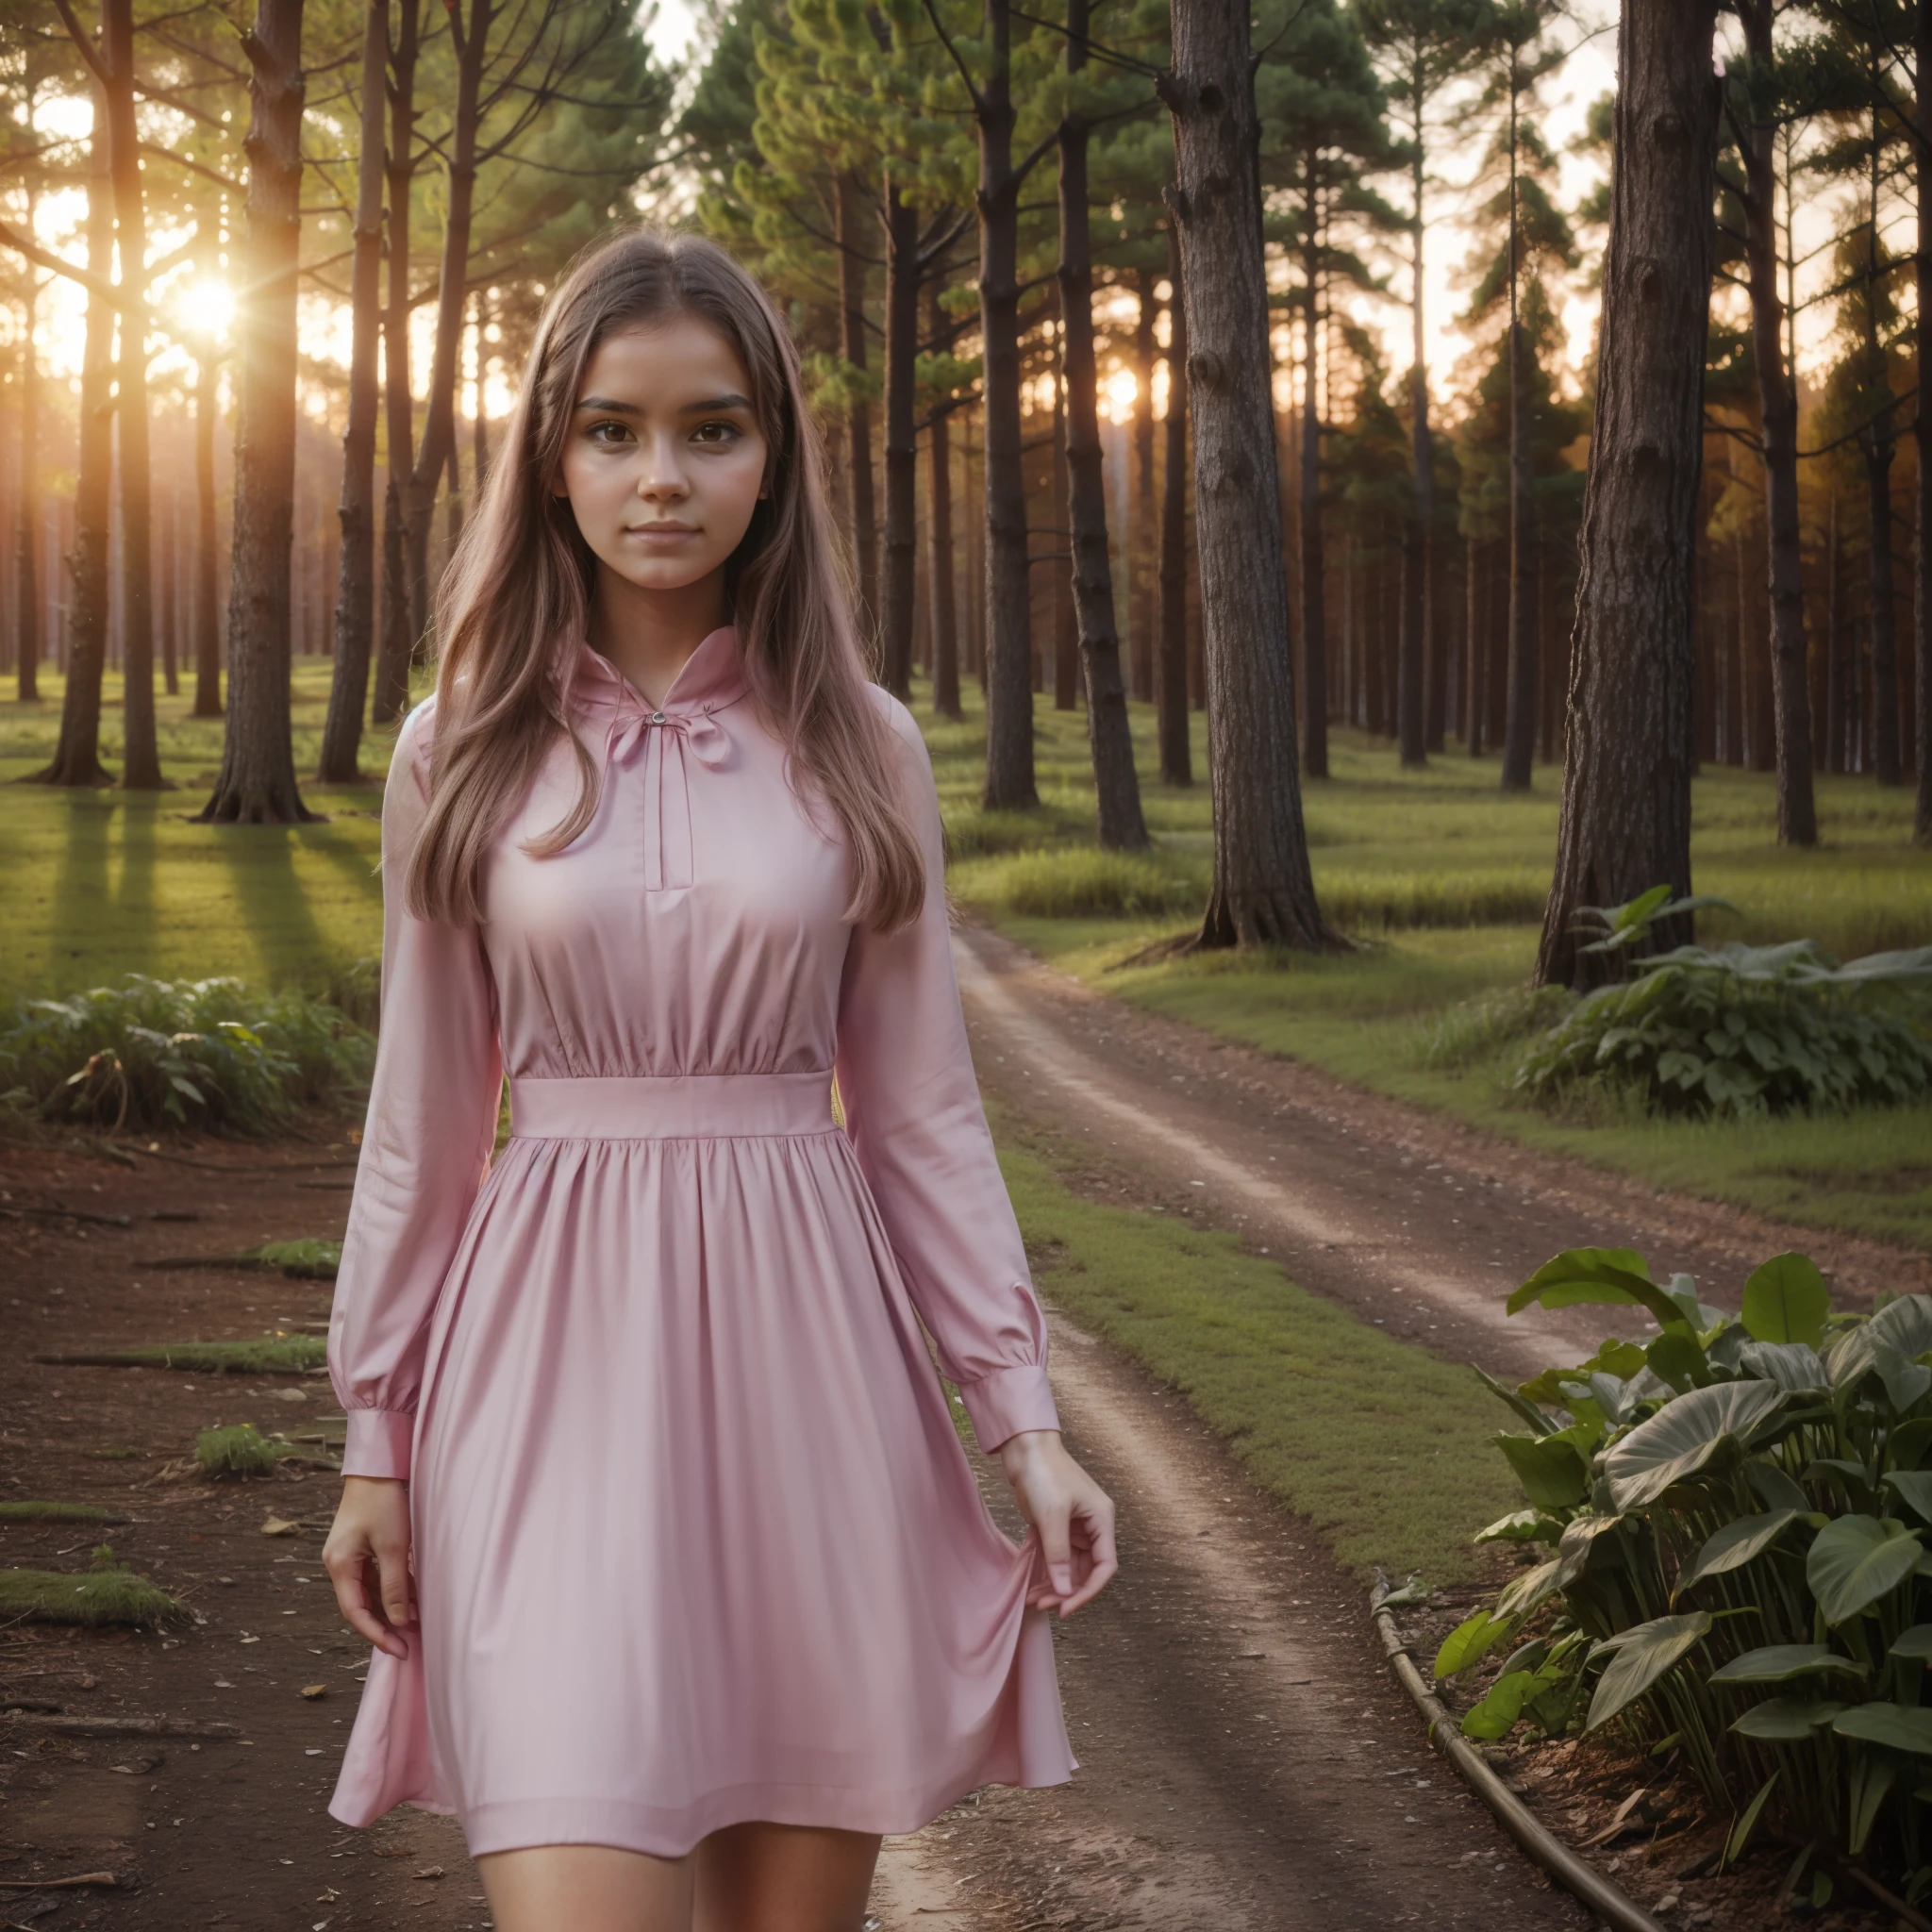 年輕女子看著相機, 粉紅色的裙子, 充滿神秘氣氛的春天森林, 灿烂的夕阳